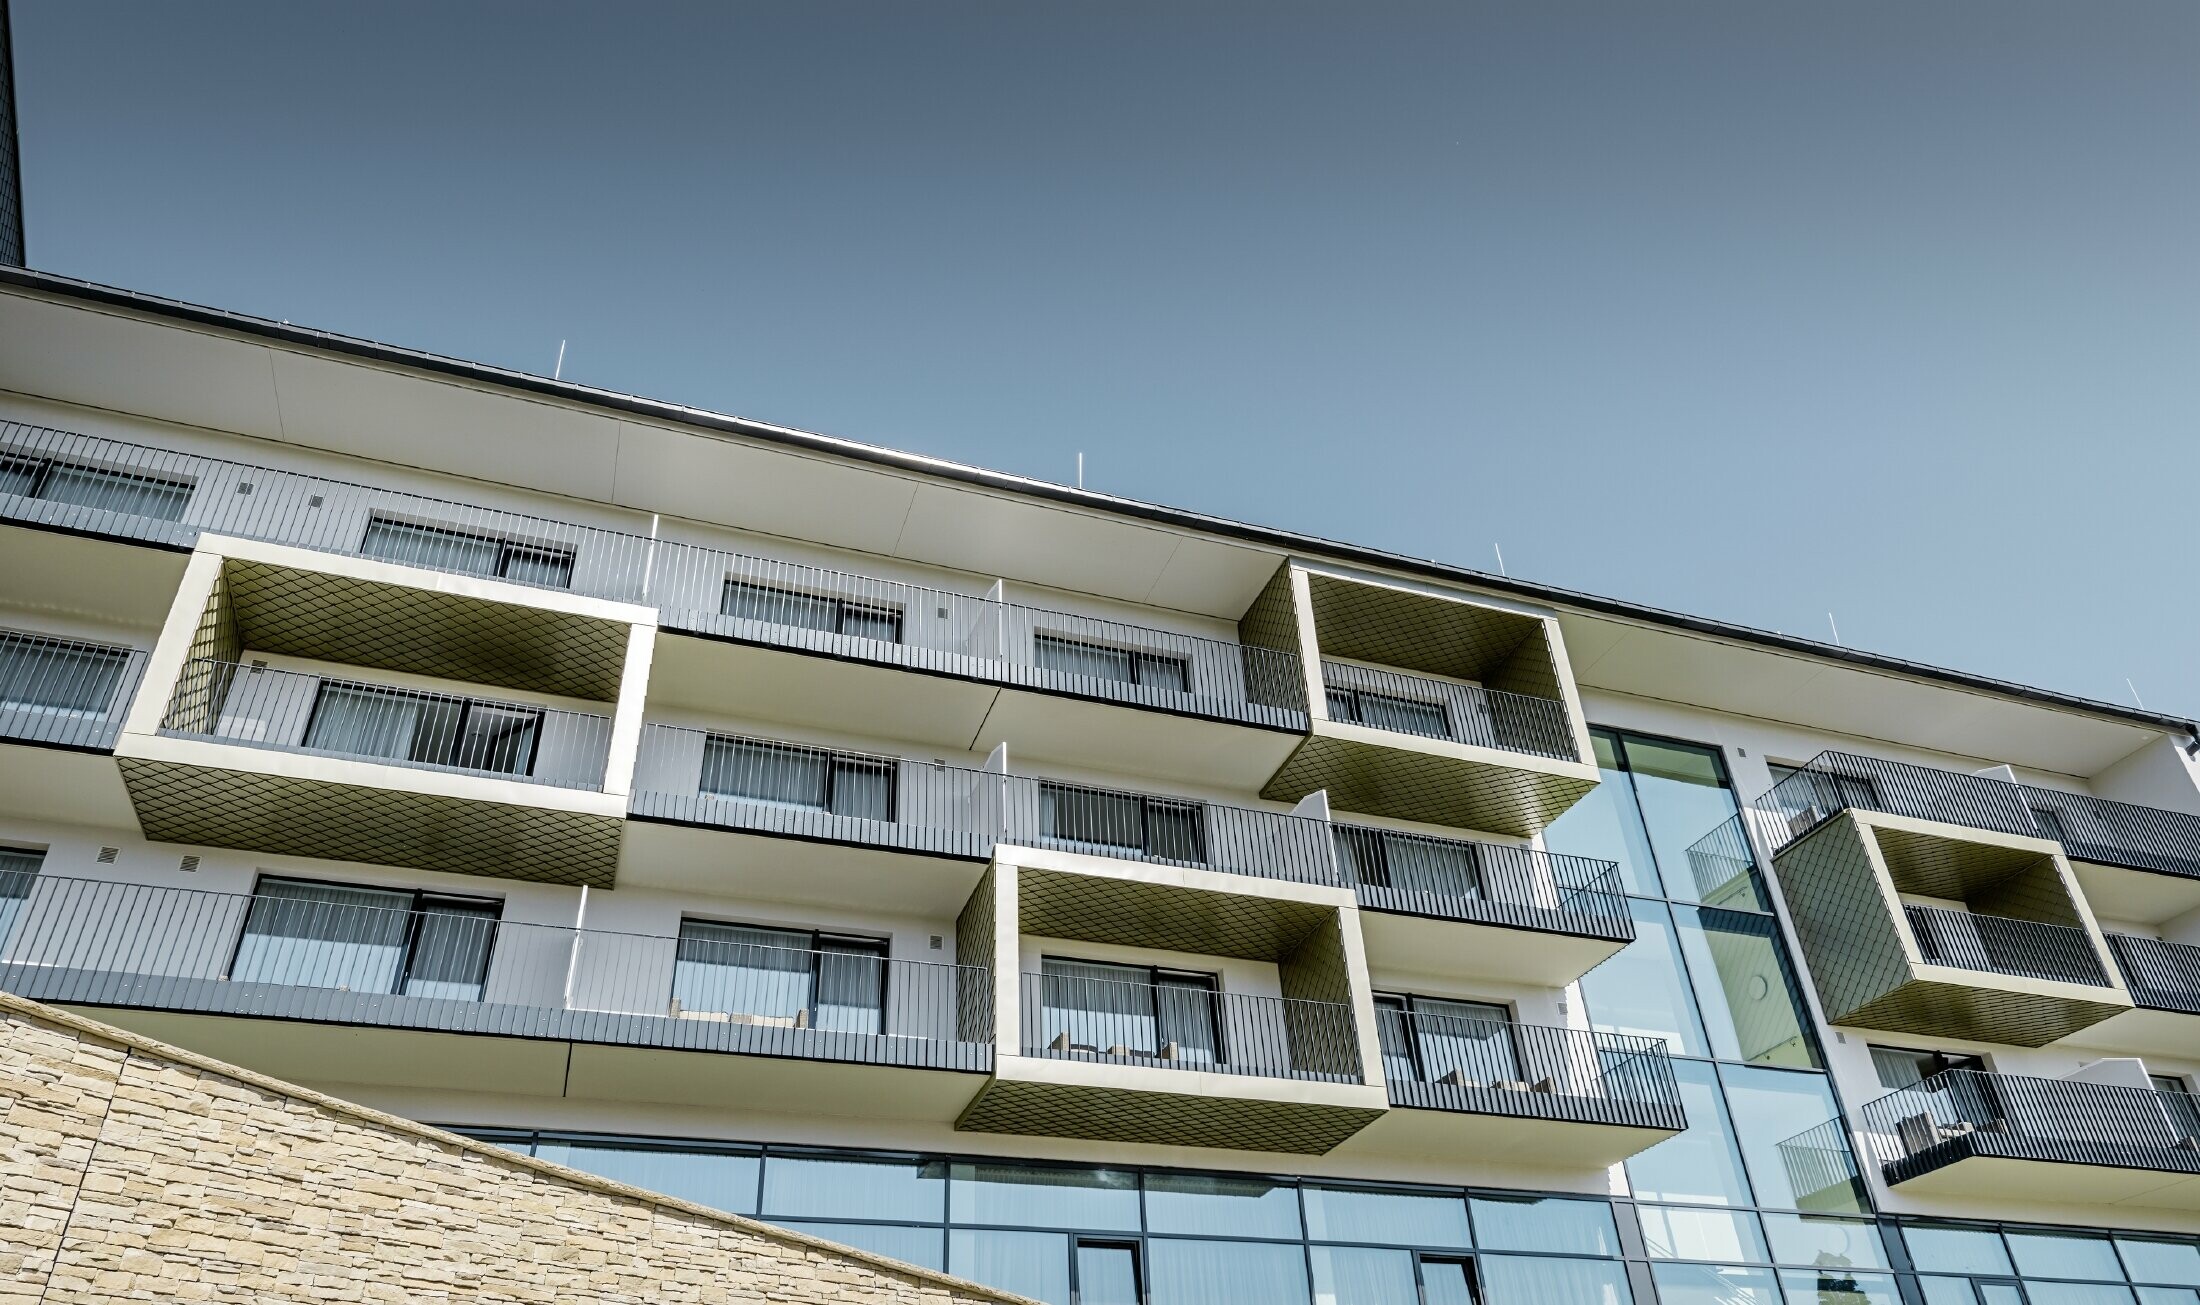 Balkonbekleding van het hotel Edita in Scheidegg met de PREFA gevellosange in lichtbrons